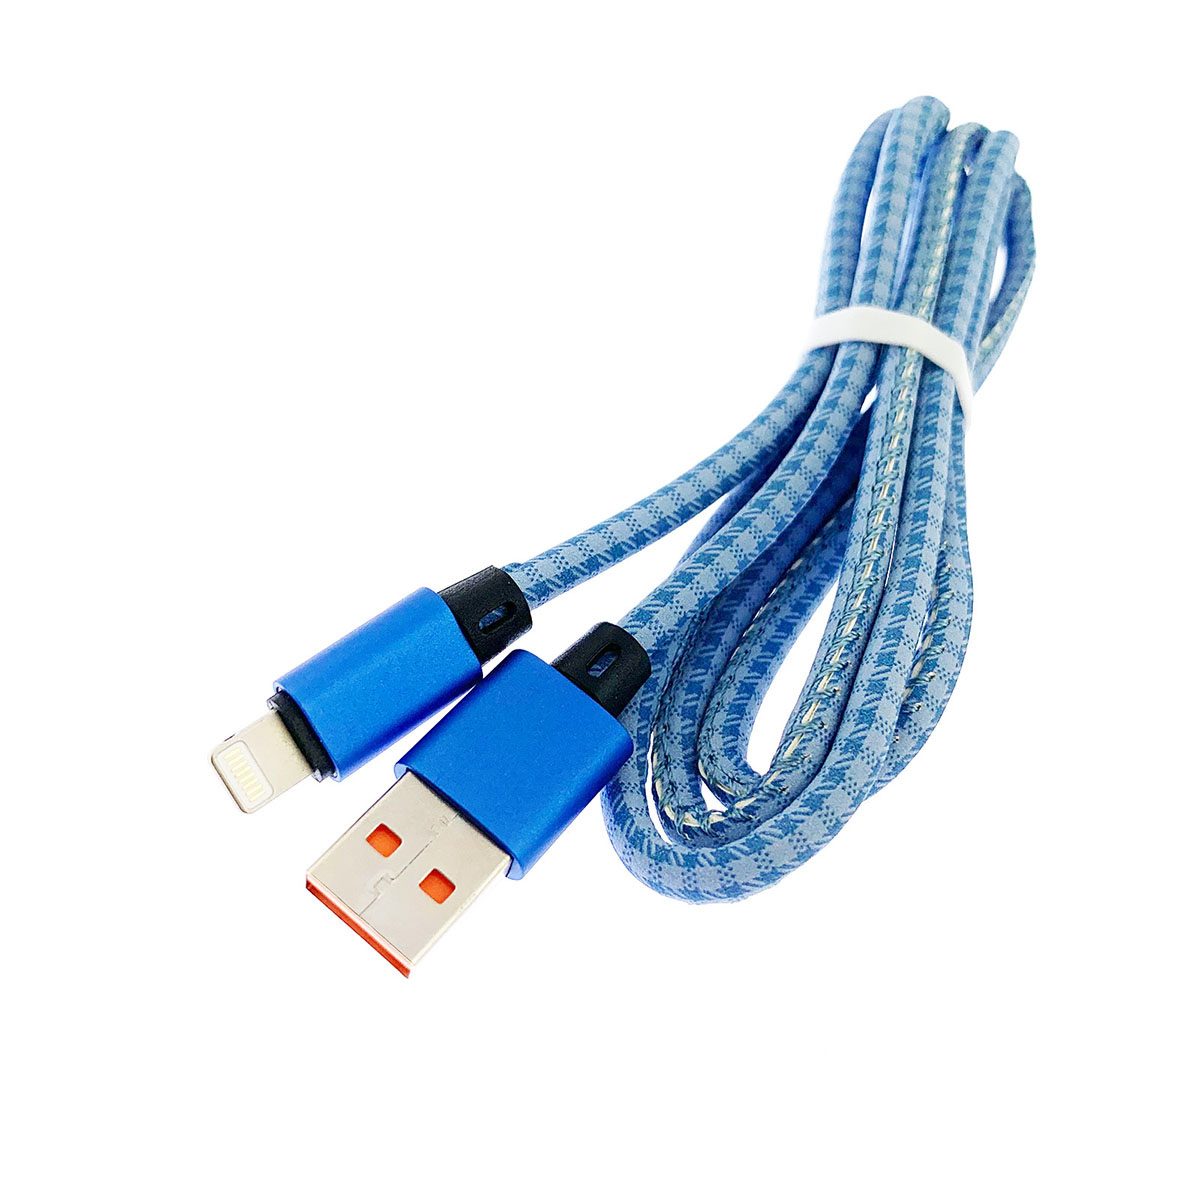 USB Дата кабель A88 для заряда и синхронизации, тип APPLE Lightning 8-pin, в армированной под кожу оболочке, длина 1 метр, цвет синий.